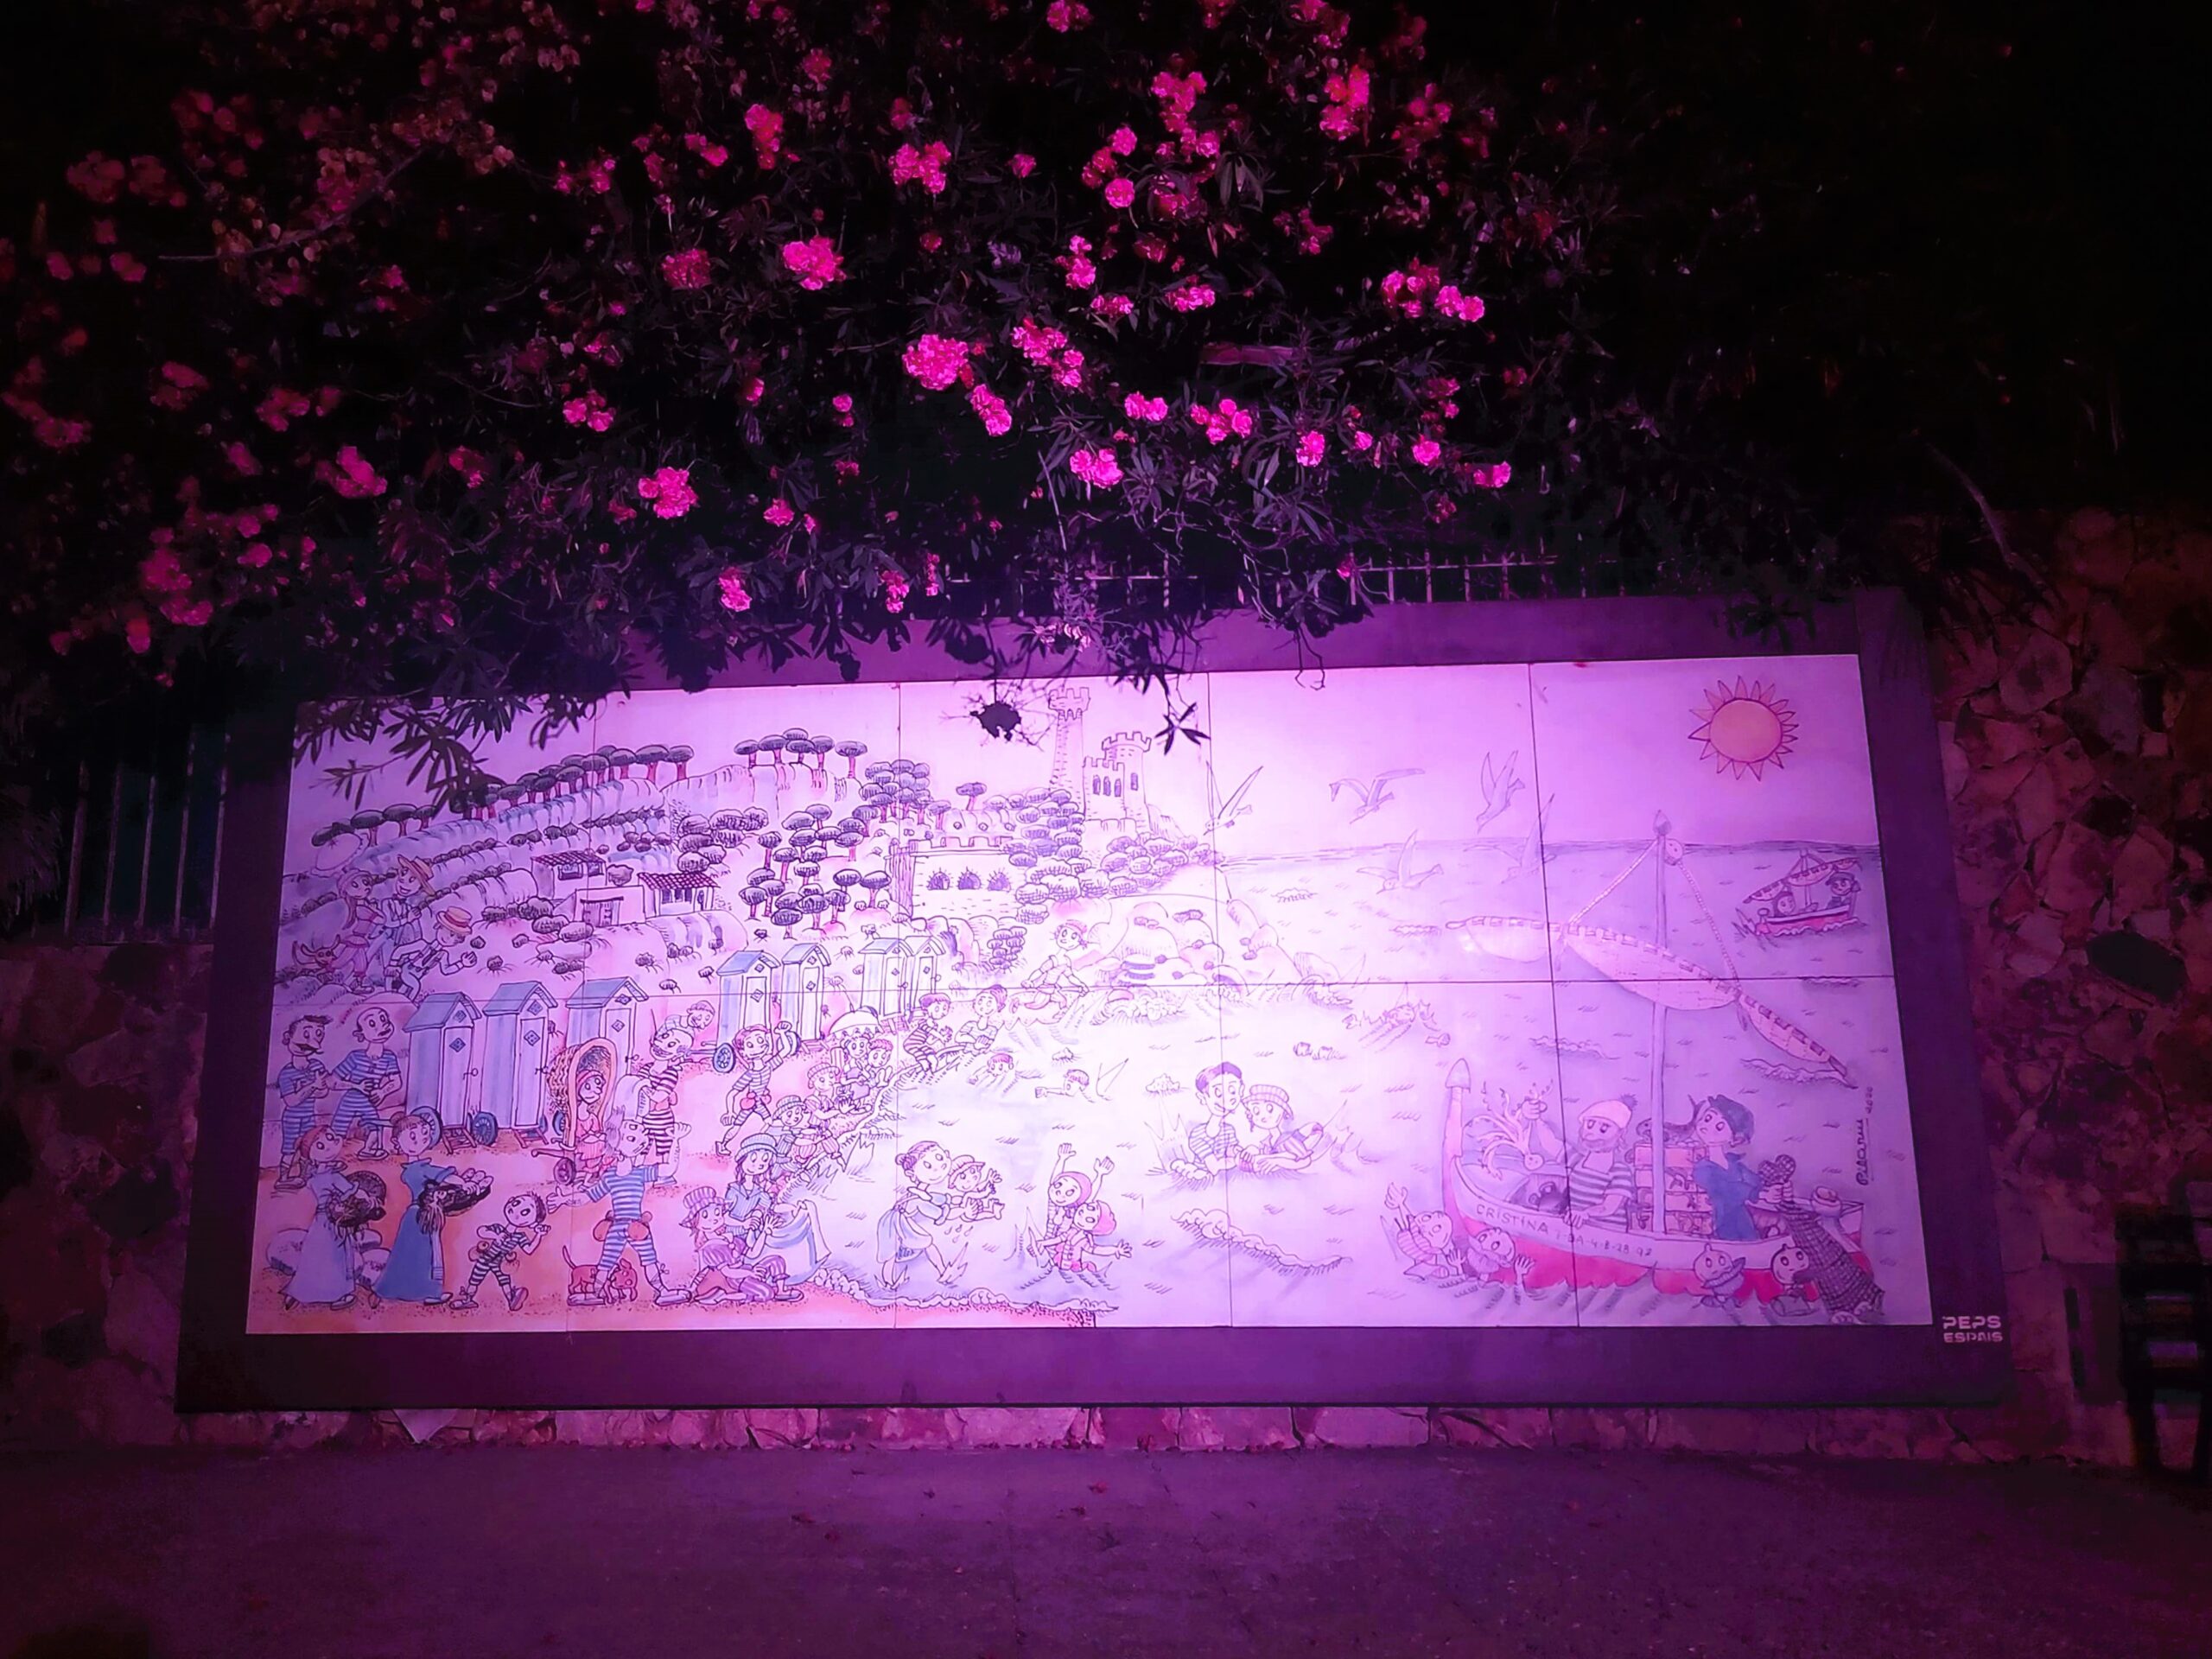 Tiled artwork at night in Lloret de Mar, Spain